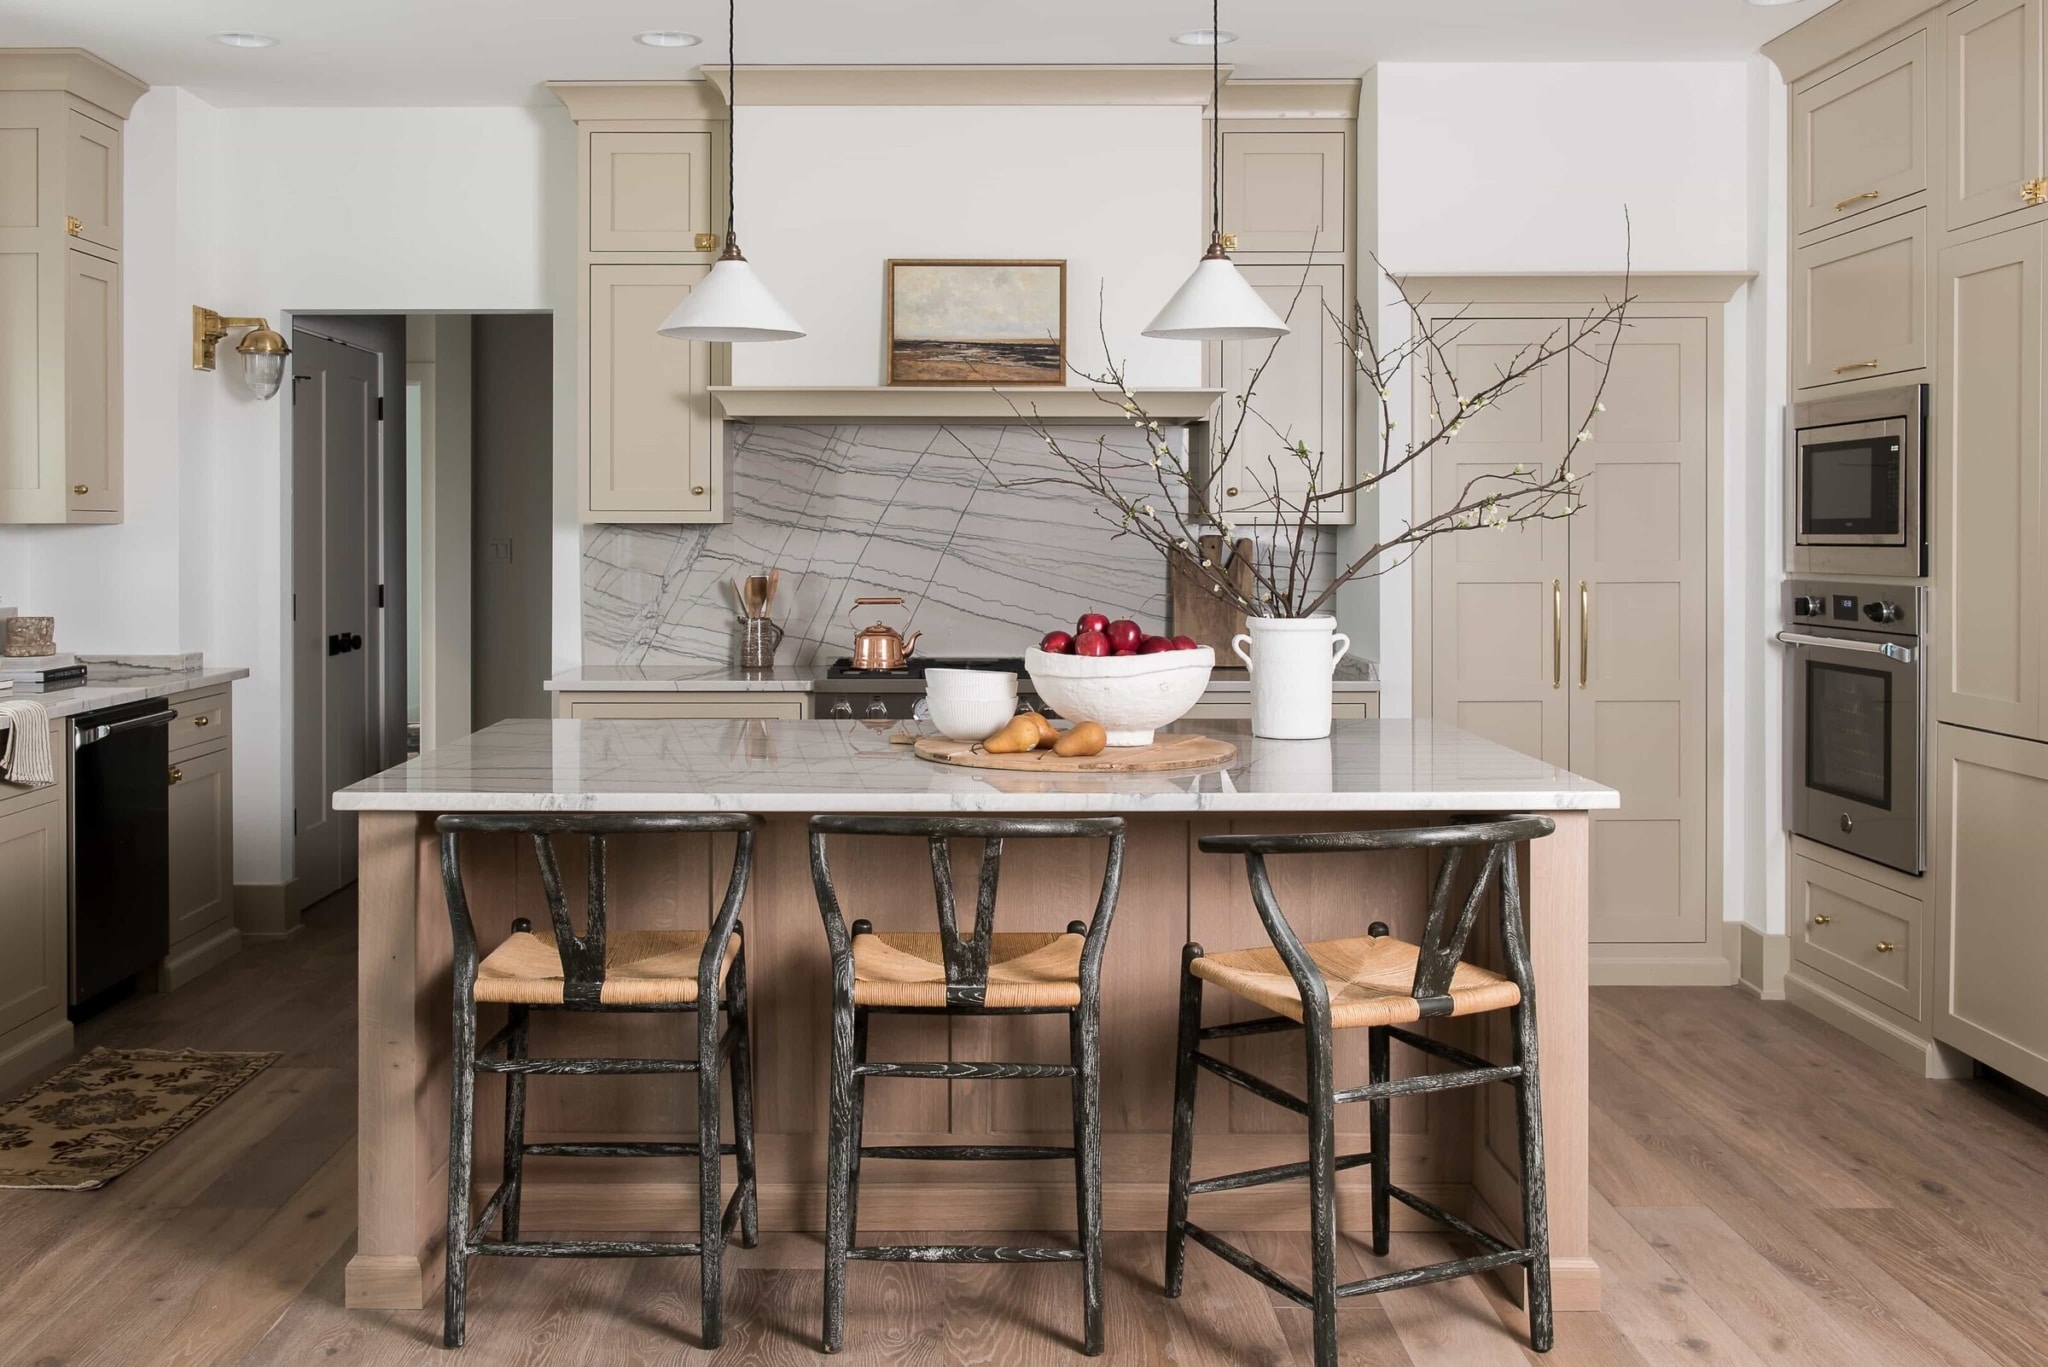 Whittney Parkinson Interior Design - kitchen design - kitchens - kitchen decor